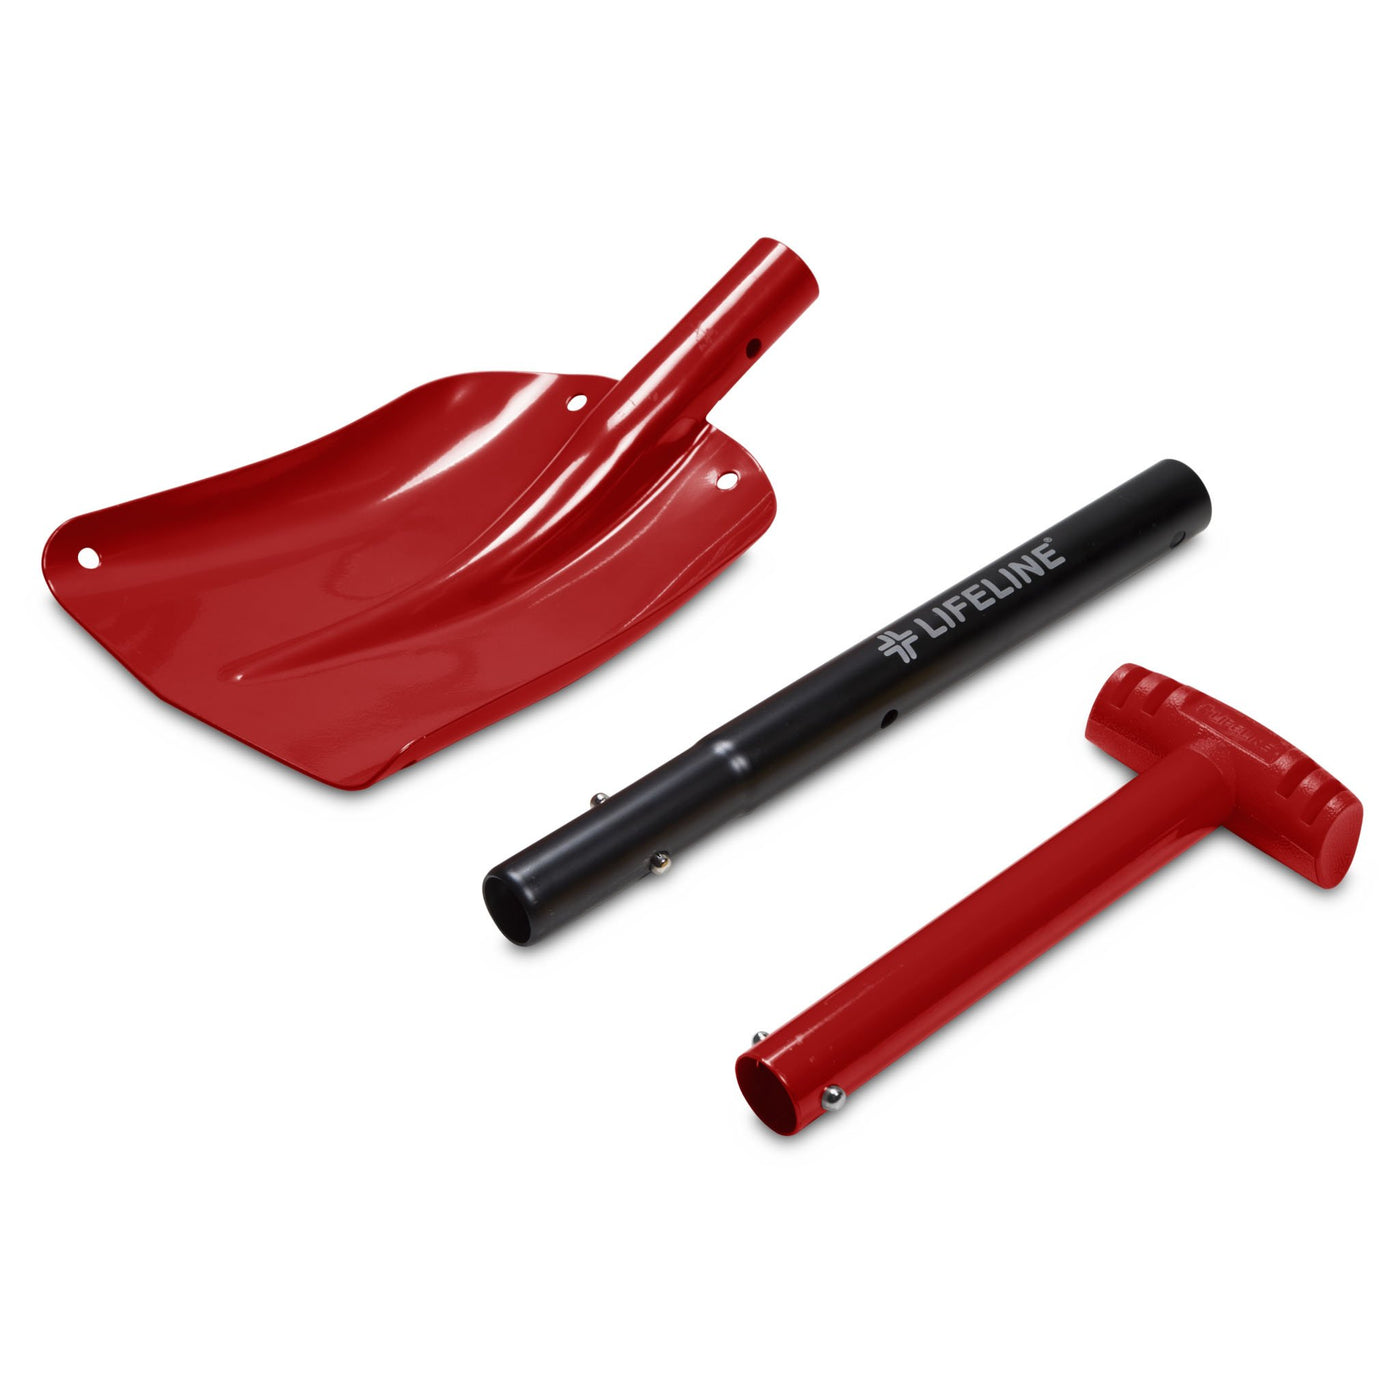 Aluminum Utility Shovel - Red/Black